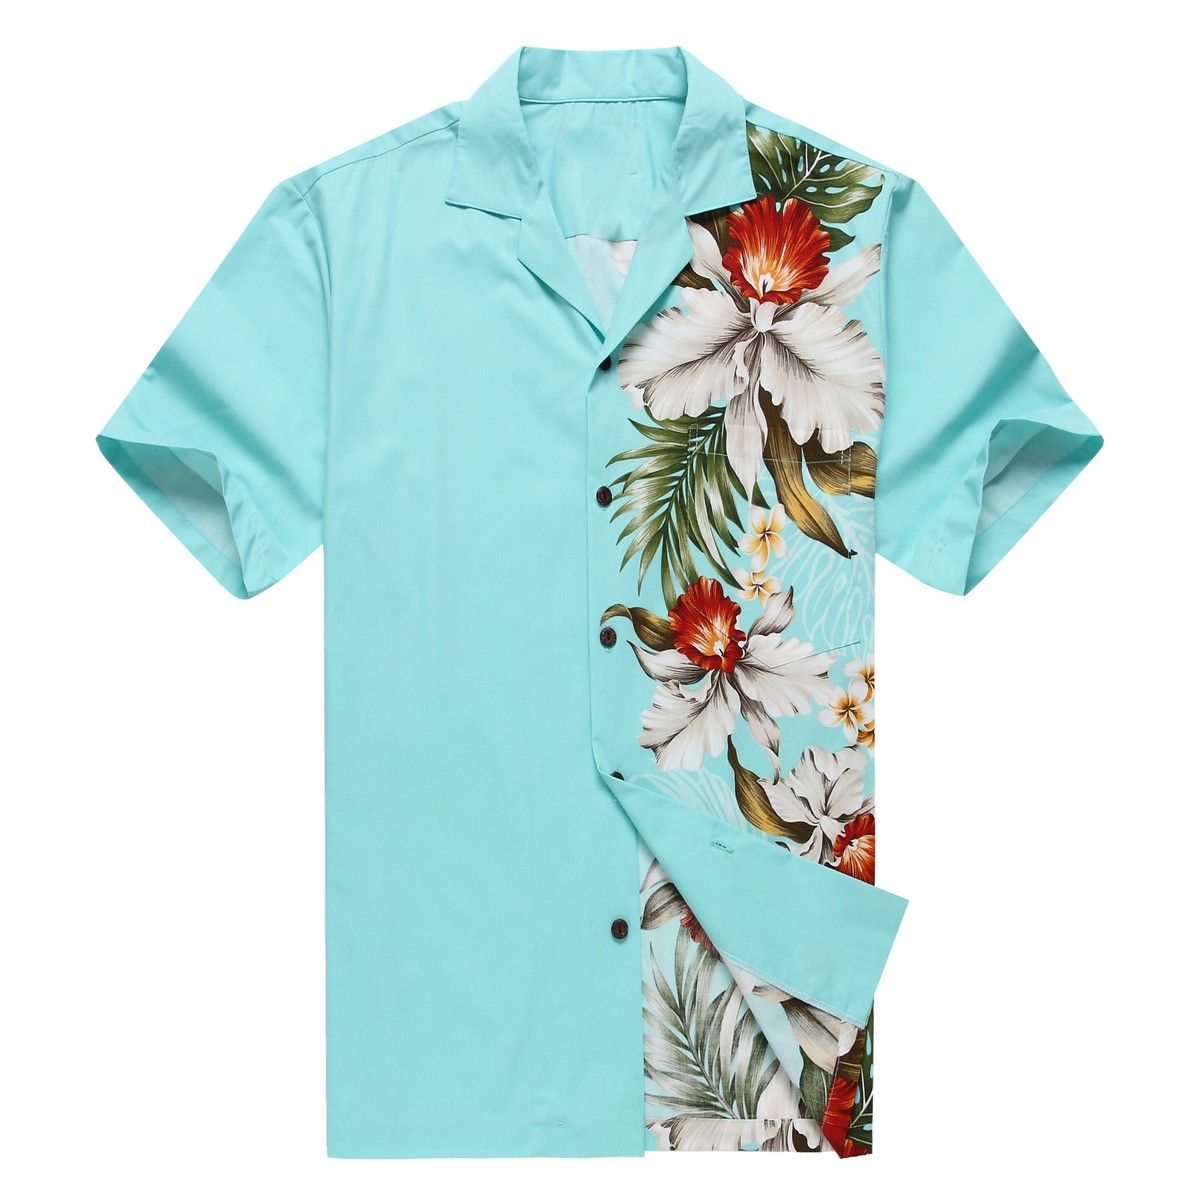 Floral Blue Unique Design Hawaiian Shirt